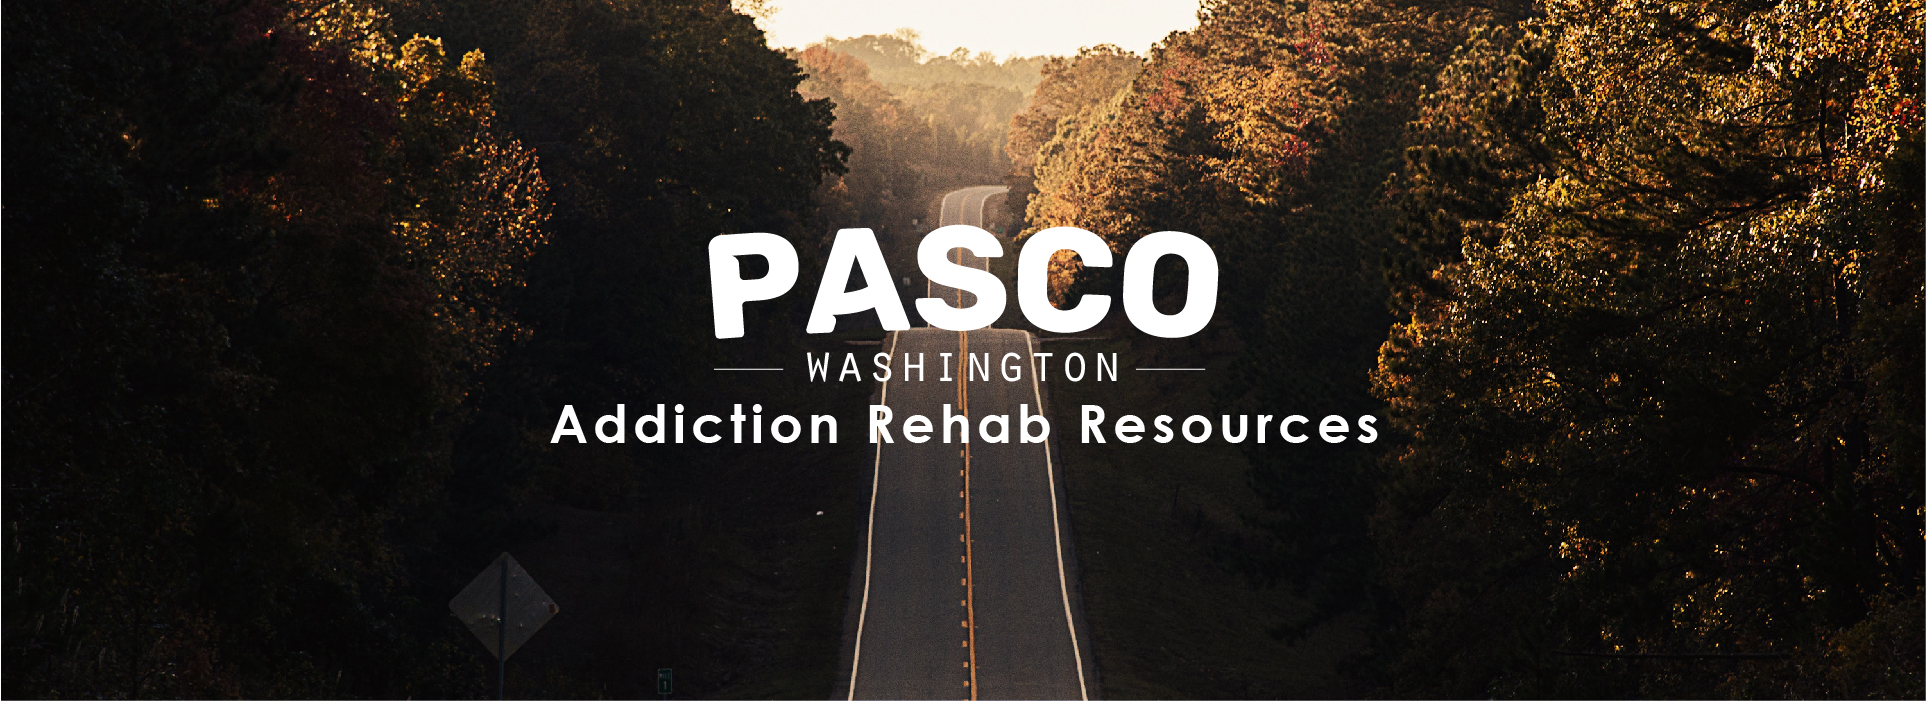 Pasco, Washington, addiction rehab resources